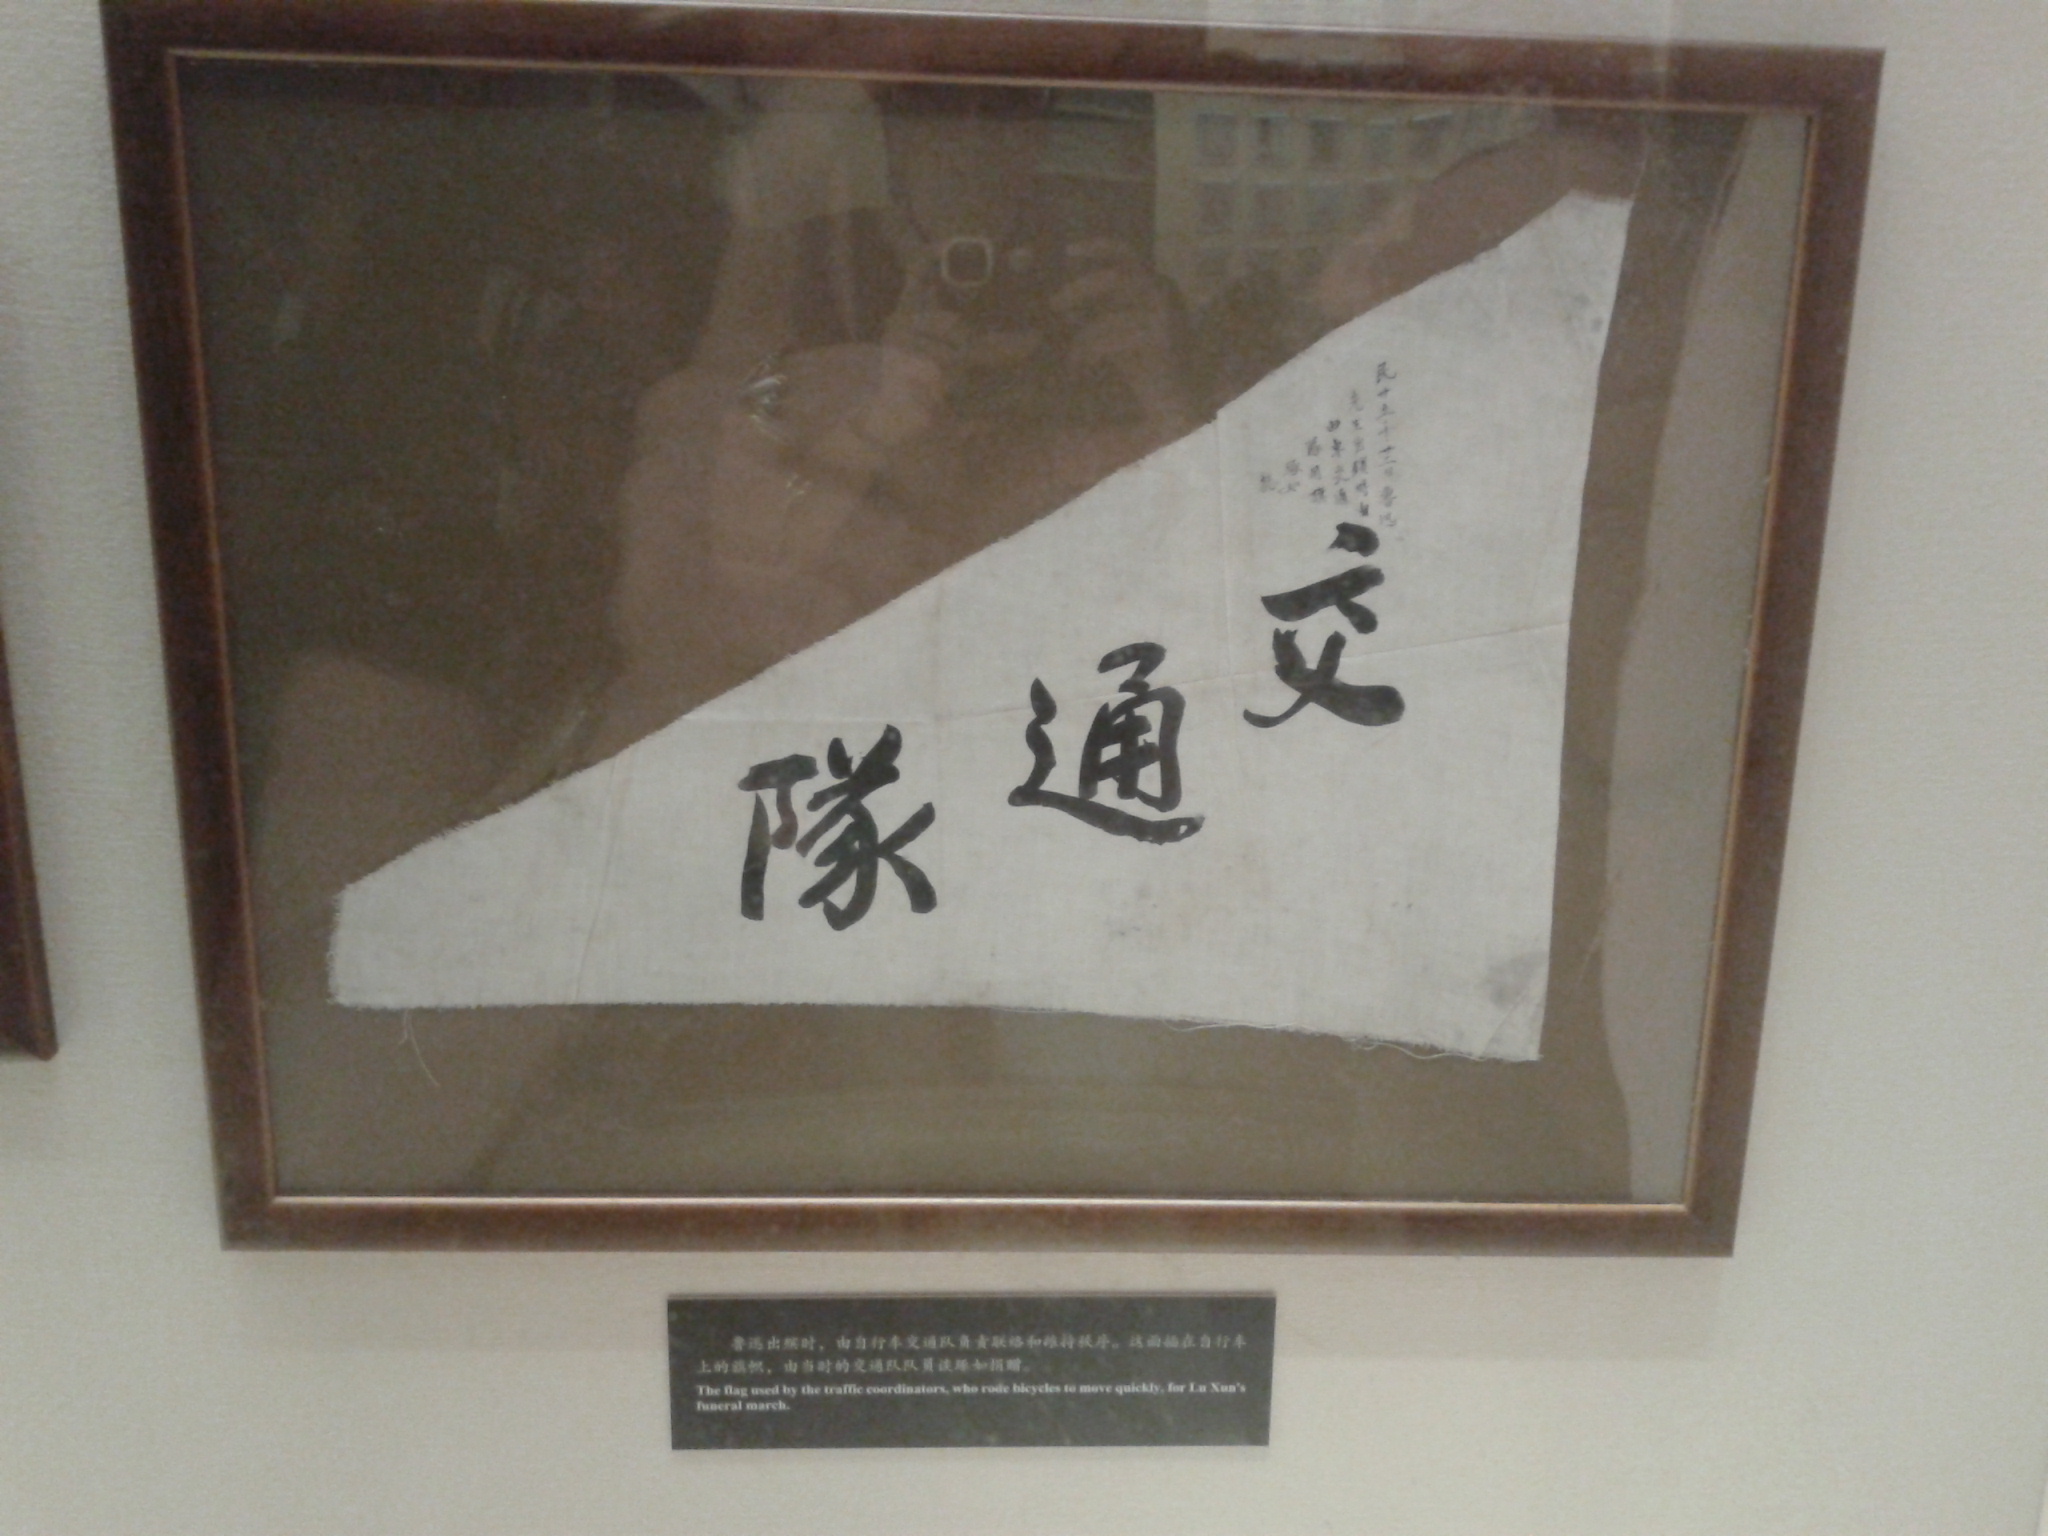 Lu Xun temetési meneténél használt forgalomirányító zászló